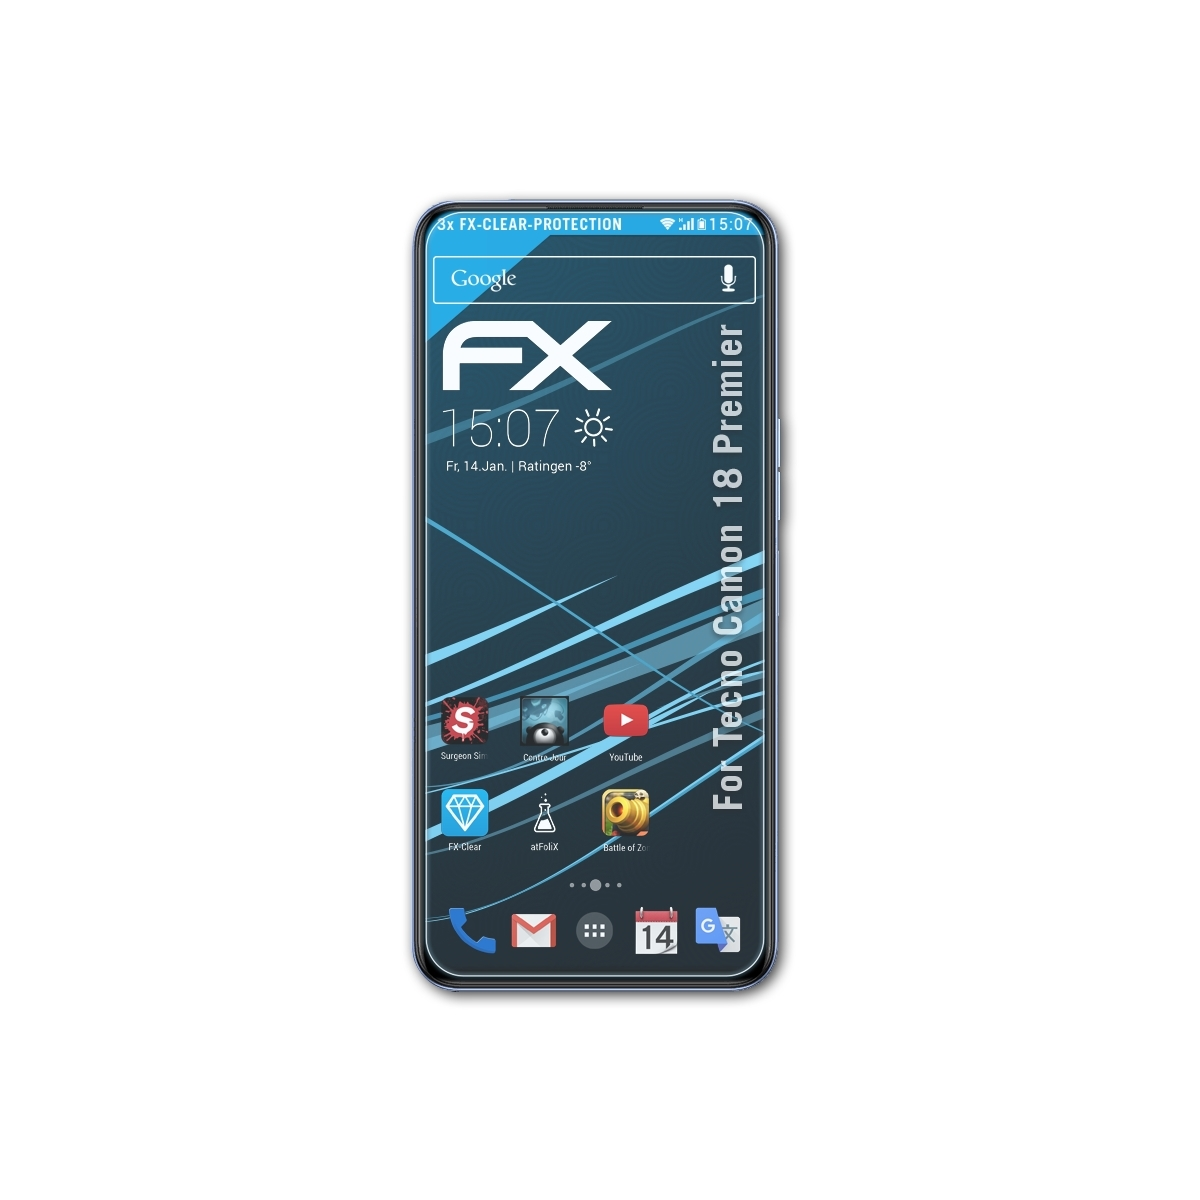 ATFOLIX 3x 18 Tecno Premier) FX-Clear Displayschutz(für Camon